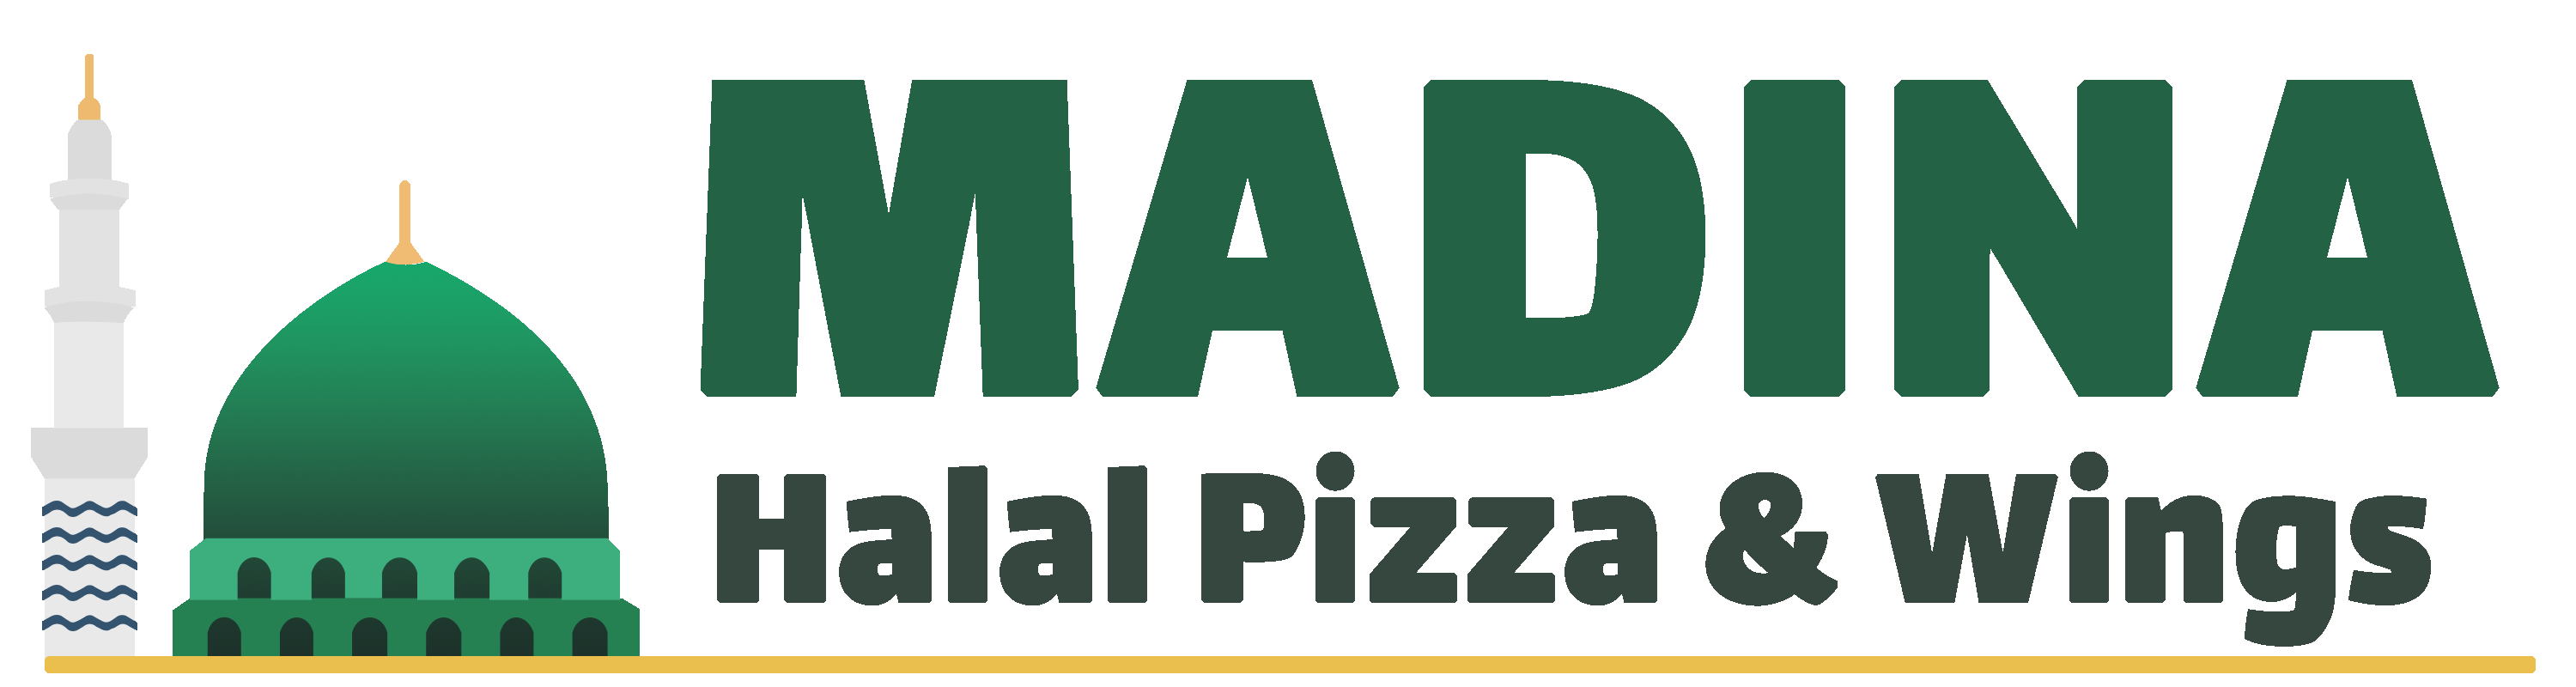 madina_logo_header